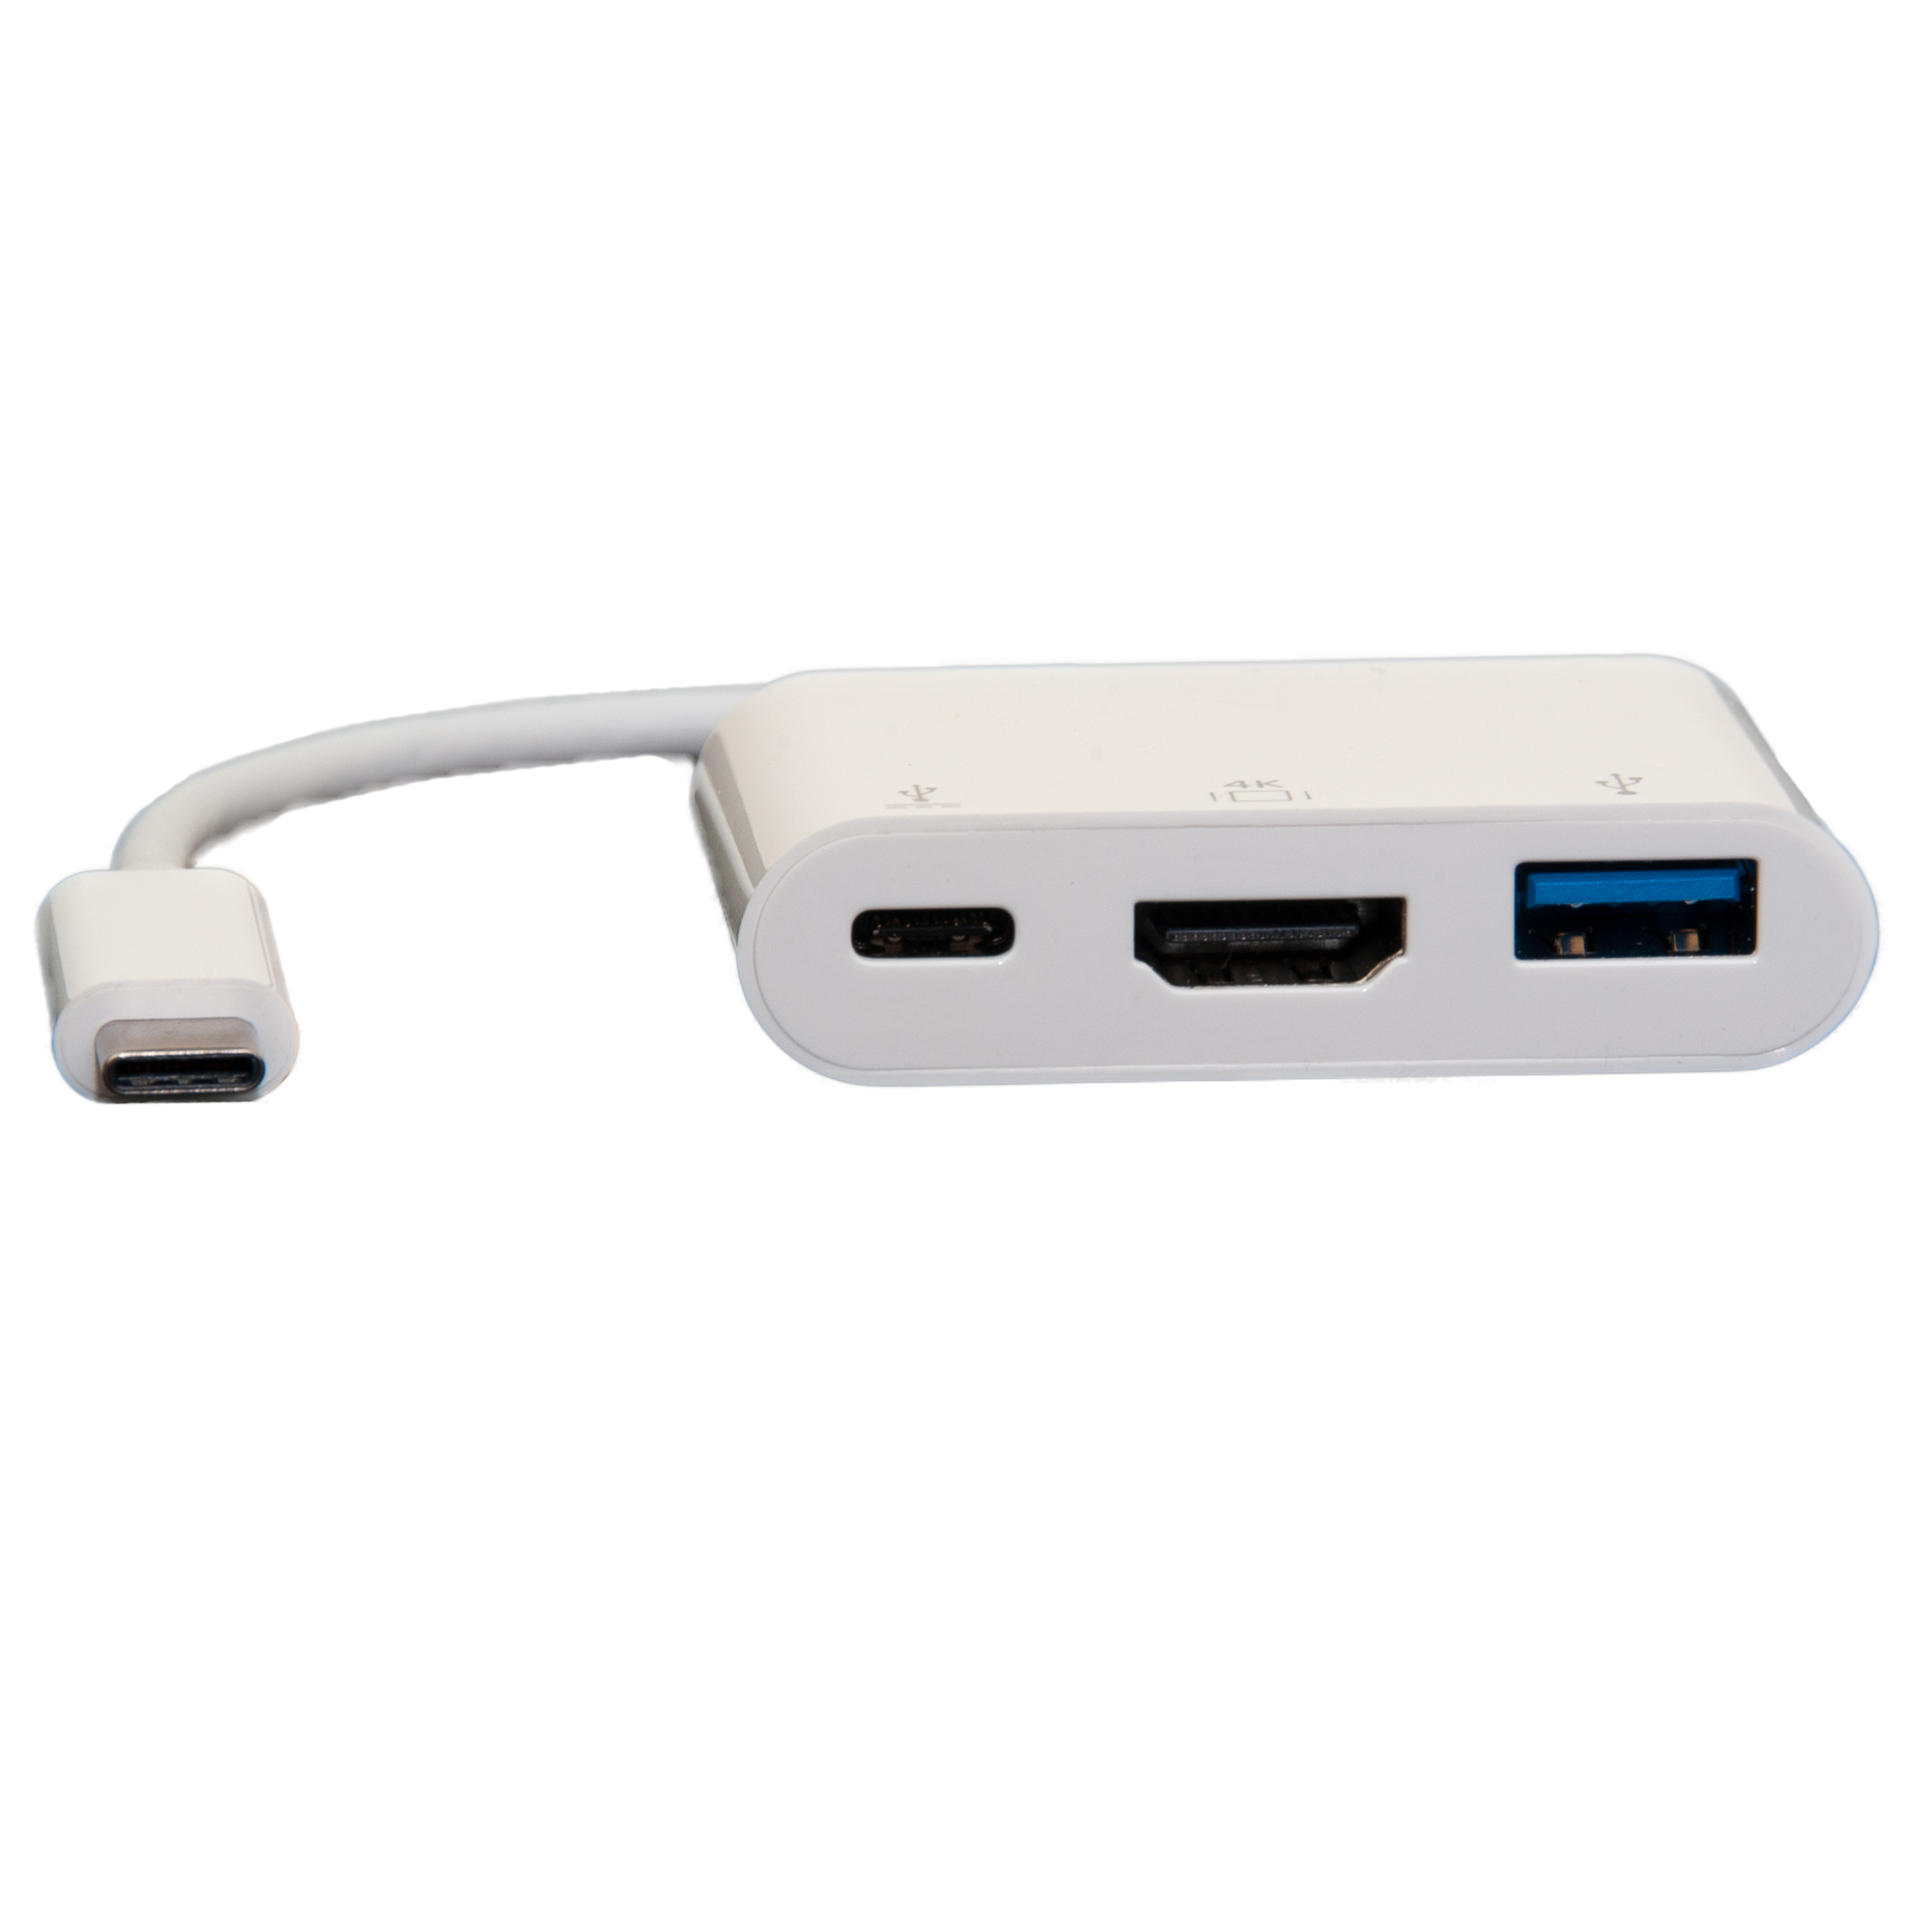 USB-C (Thunderbolt 3) to HDMI + USB 3.0 + USB-C